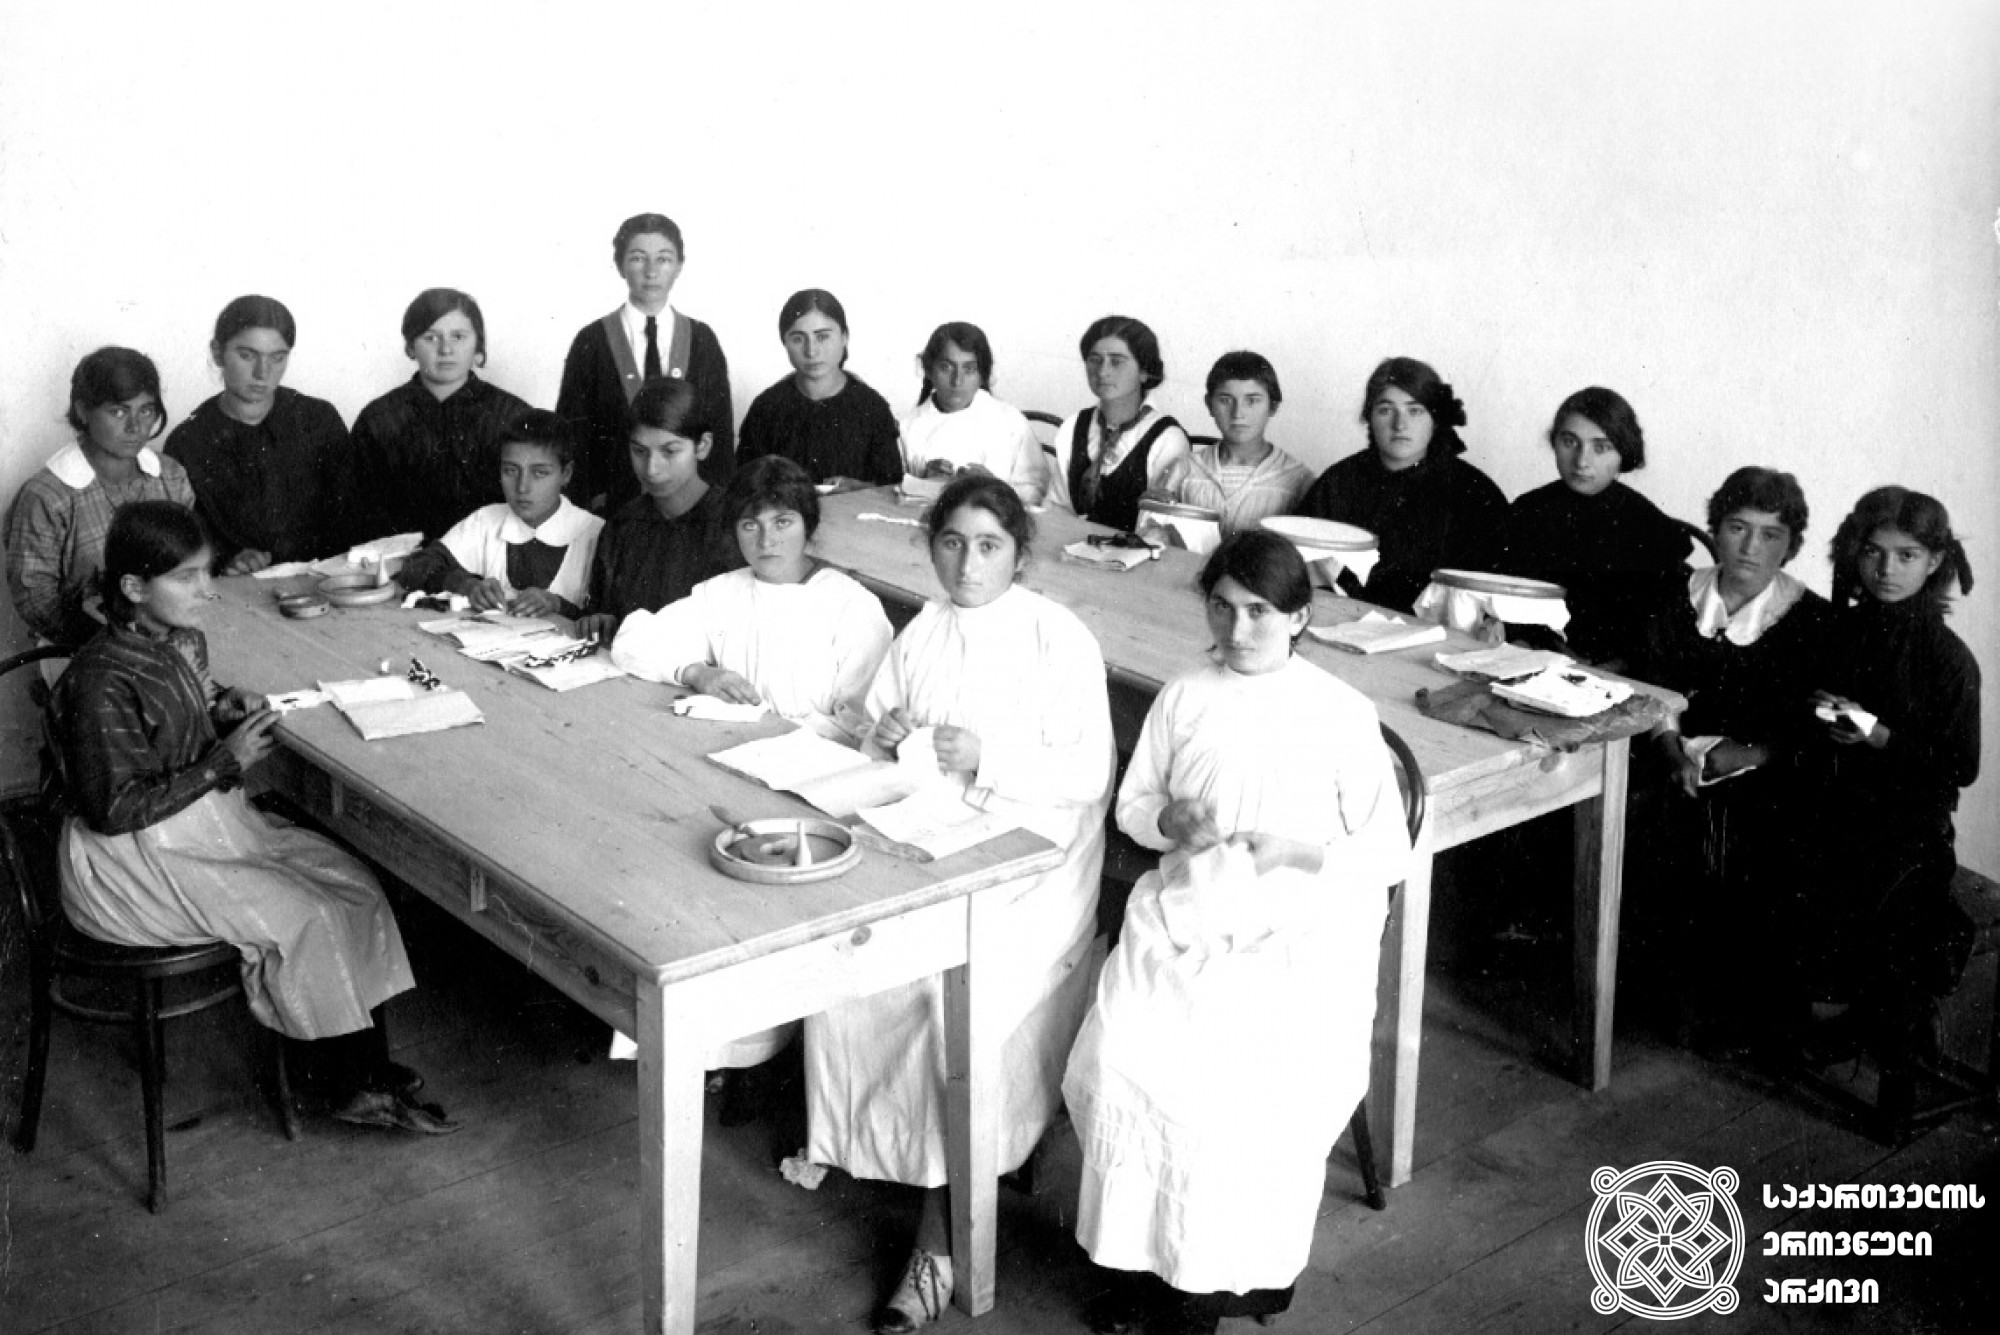 სოხუმის პროფესიული  სასწავლებლის მოსწავლეები და მასწავლებელი ს. გ. ჩიტაძე
1916 წელი. ფოტო ფოტოგრაფია „პროგრესიდან“ <br>
Students of the Sokhumi Vocational School and teacher S. G. Chitadze <br>
1916. Photo from photography "Progress" <br>